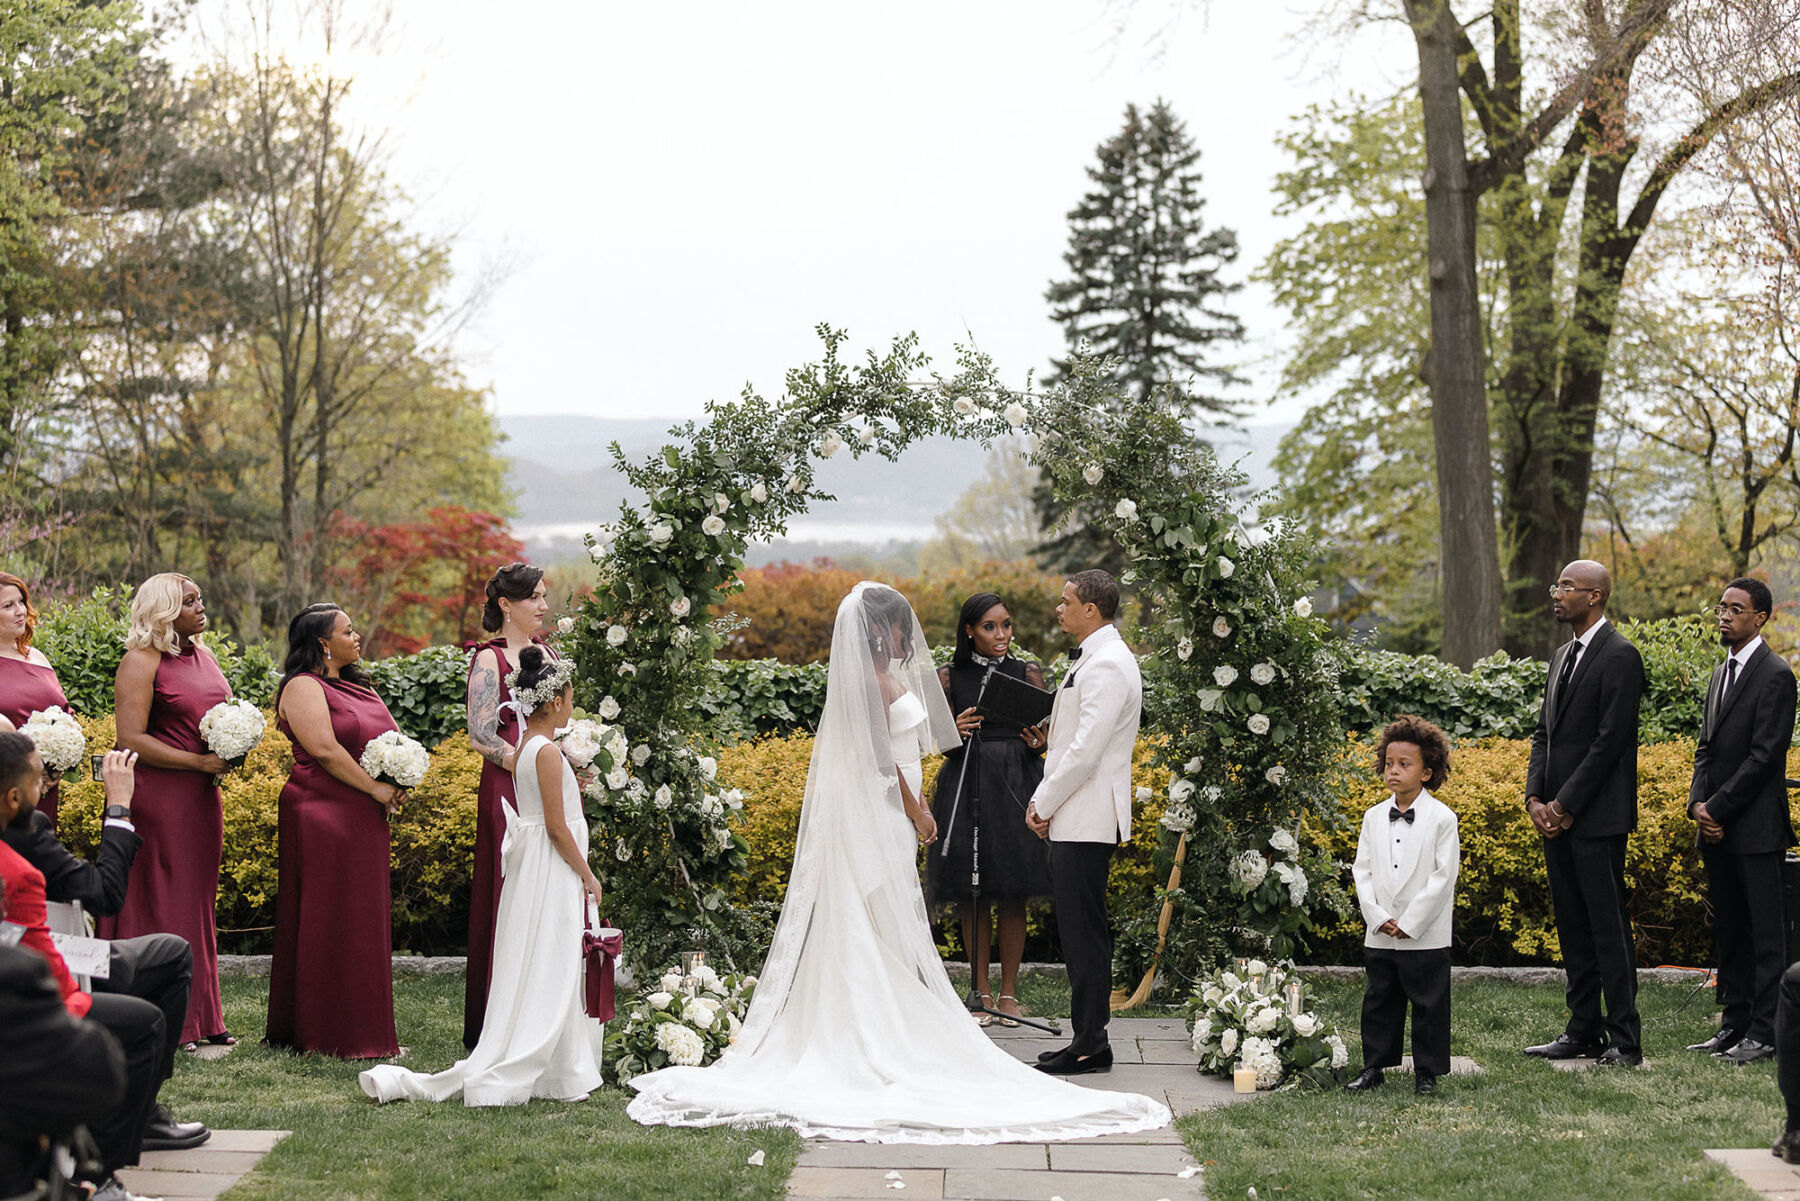 Floral arch, outdoor wedding ceremony, Eva Lendel bride